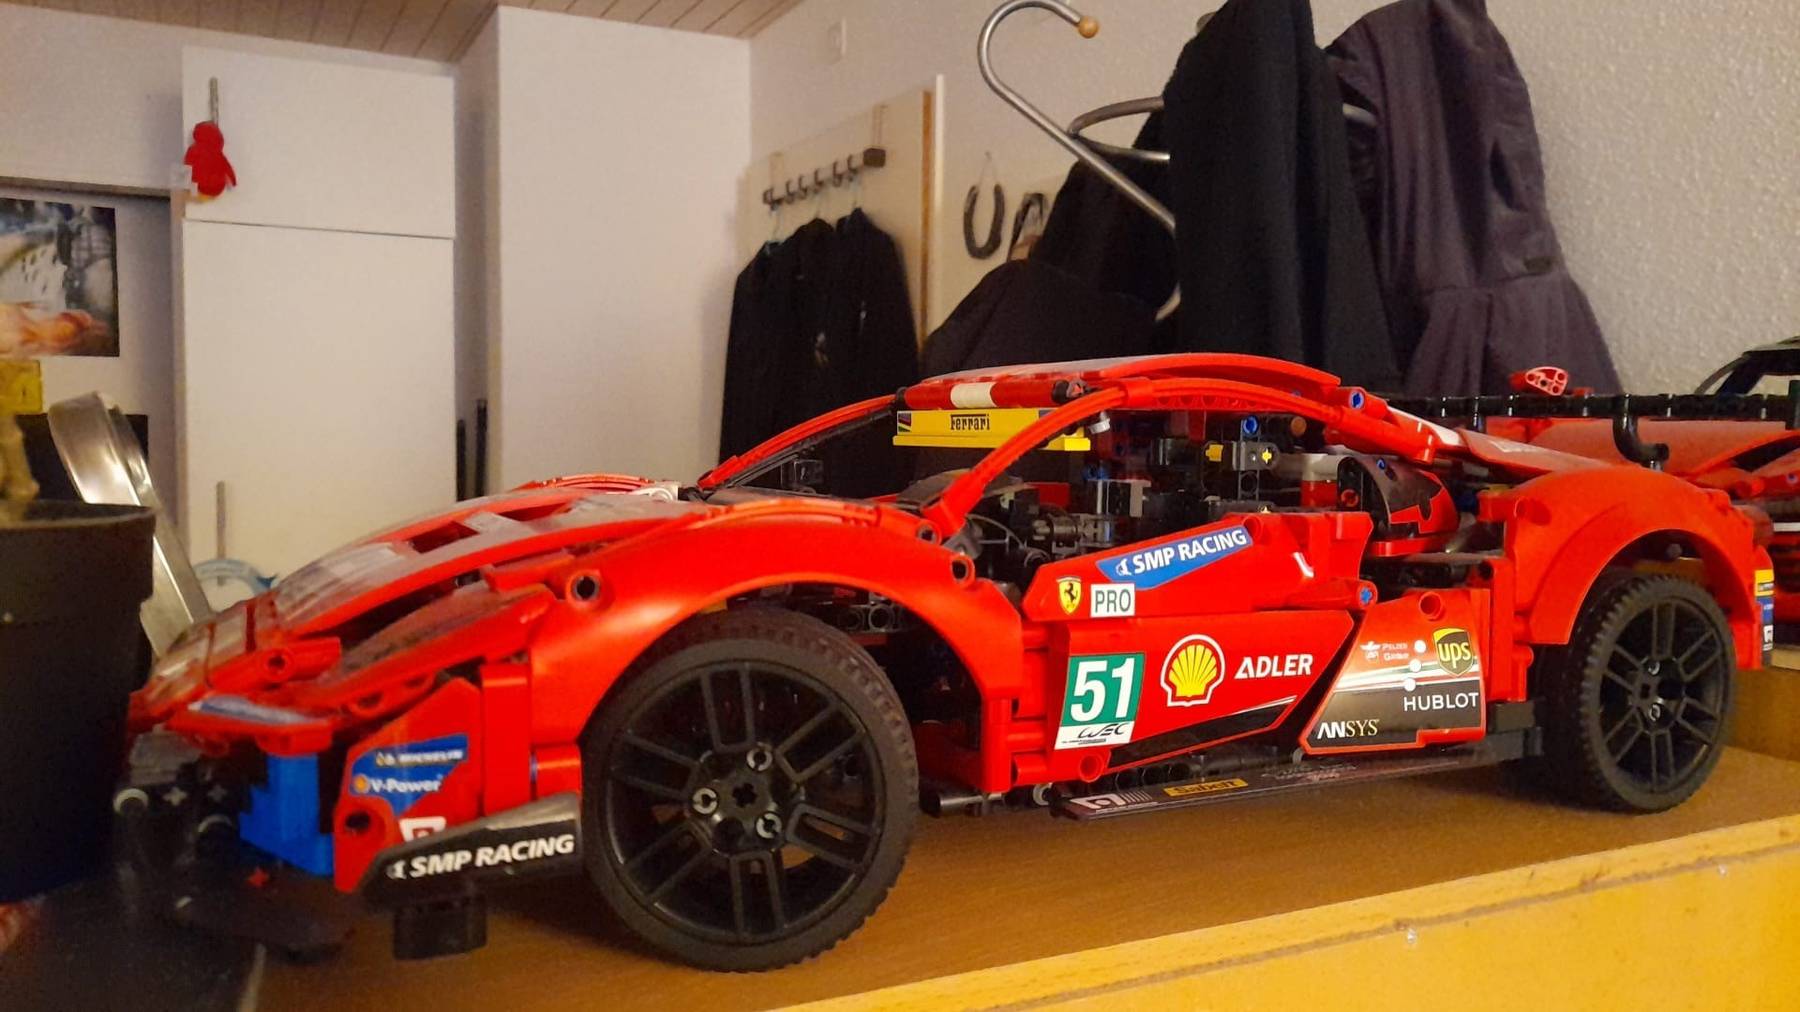 Der Lego-Ferrari besteht aus etwa 4000 Einzelteilen